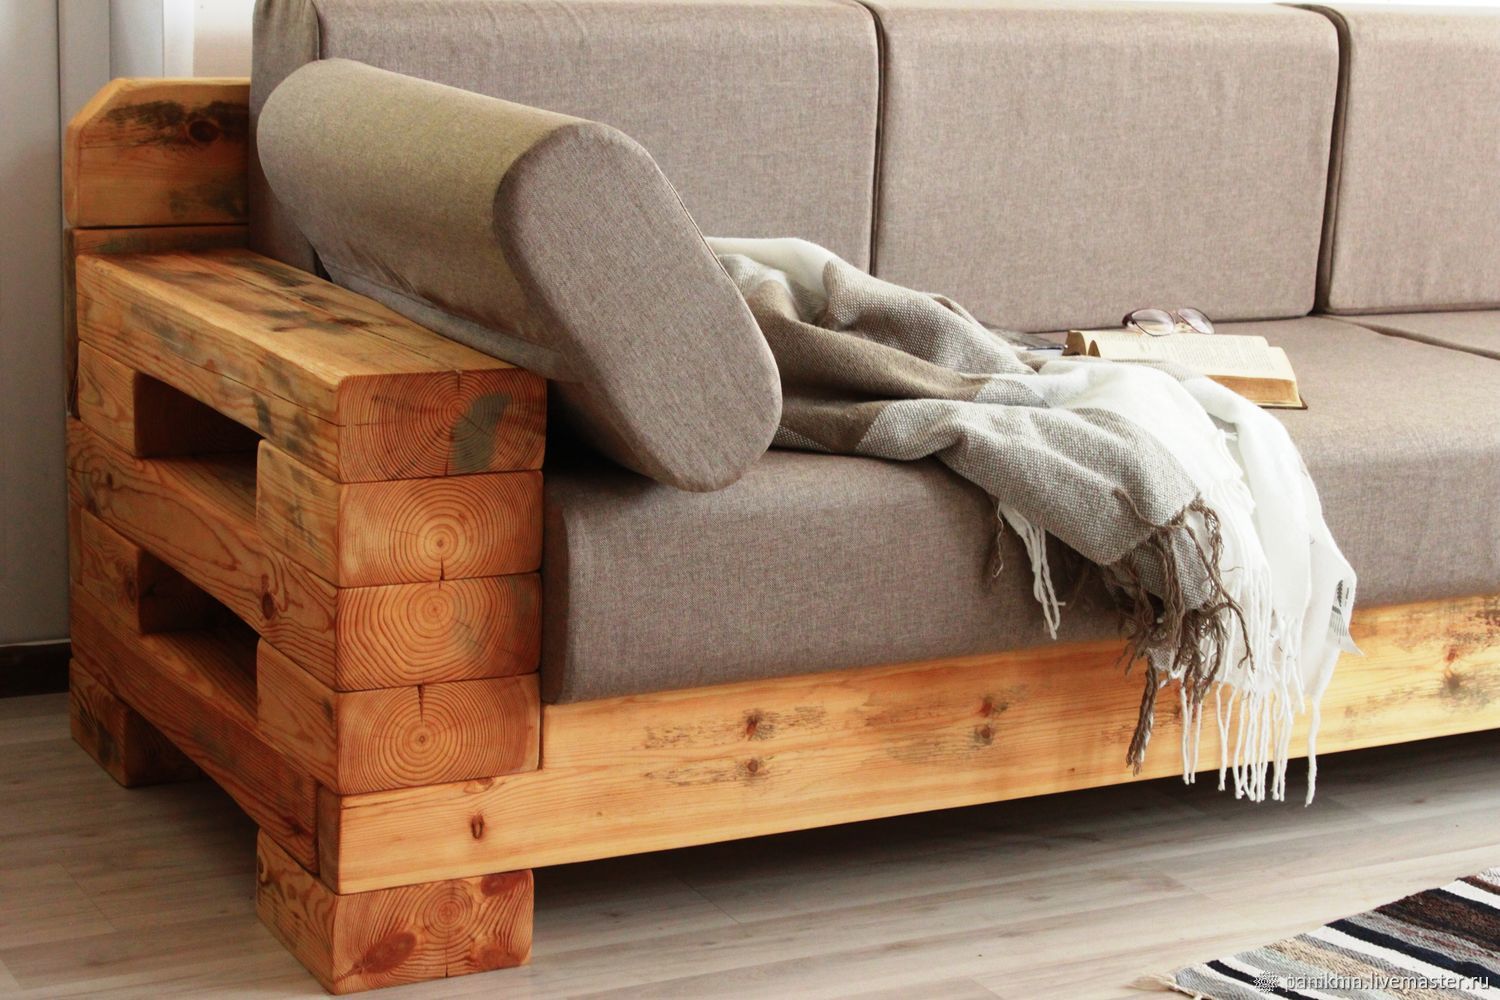 Самодельные кресла, диваны и кровати: из чего их можно сделать